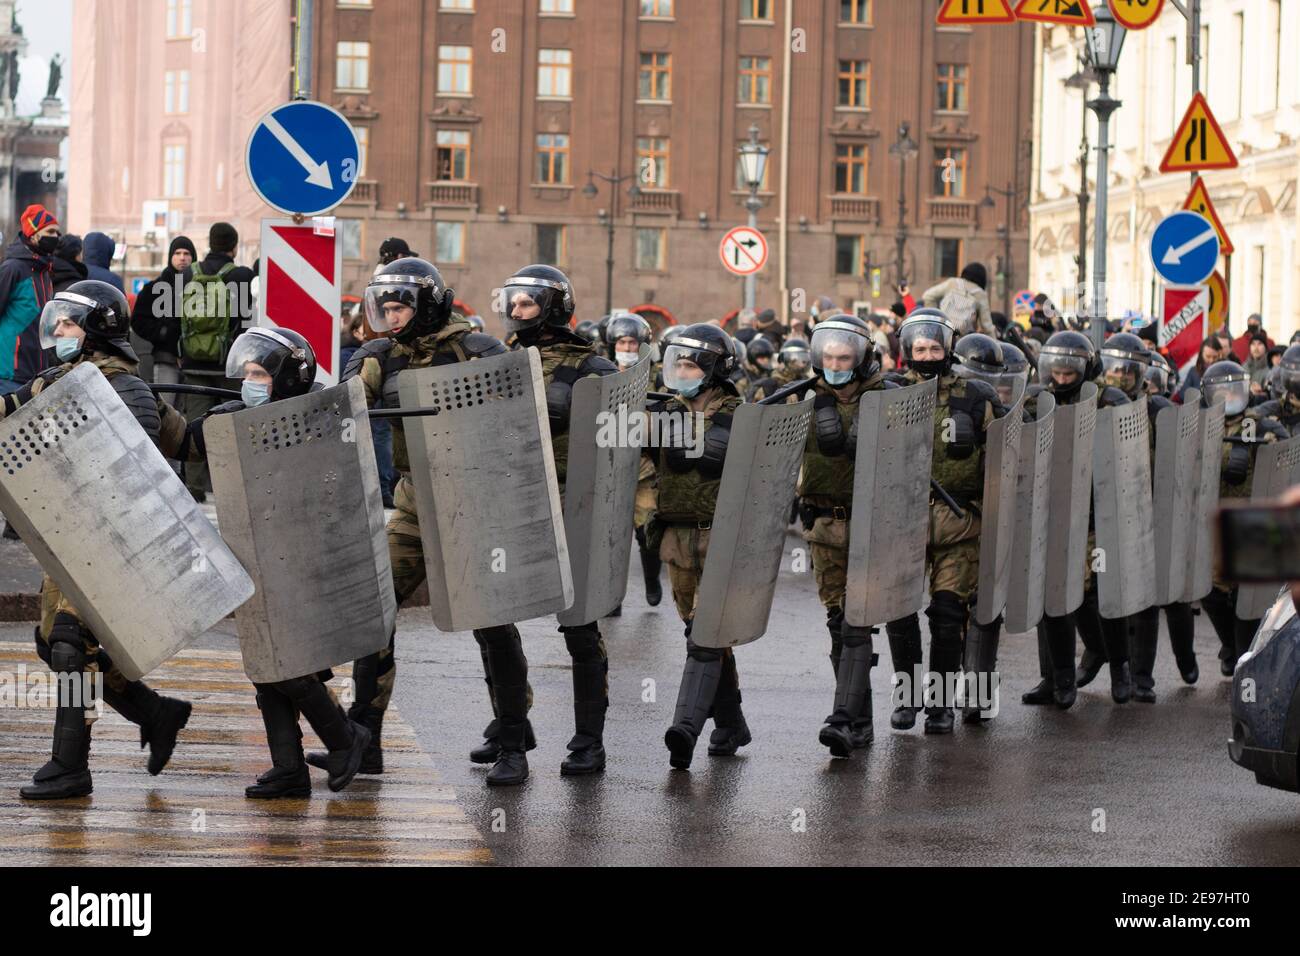 Saint-Pétersbourg, Russie - 31 janvier 2021 : groupe de police ou d'armée dans la rue, manifestation en Russie, Editorial Banque D'Images